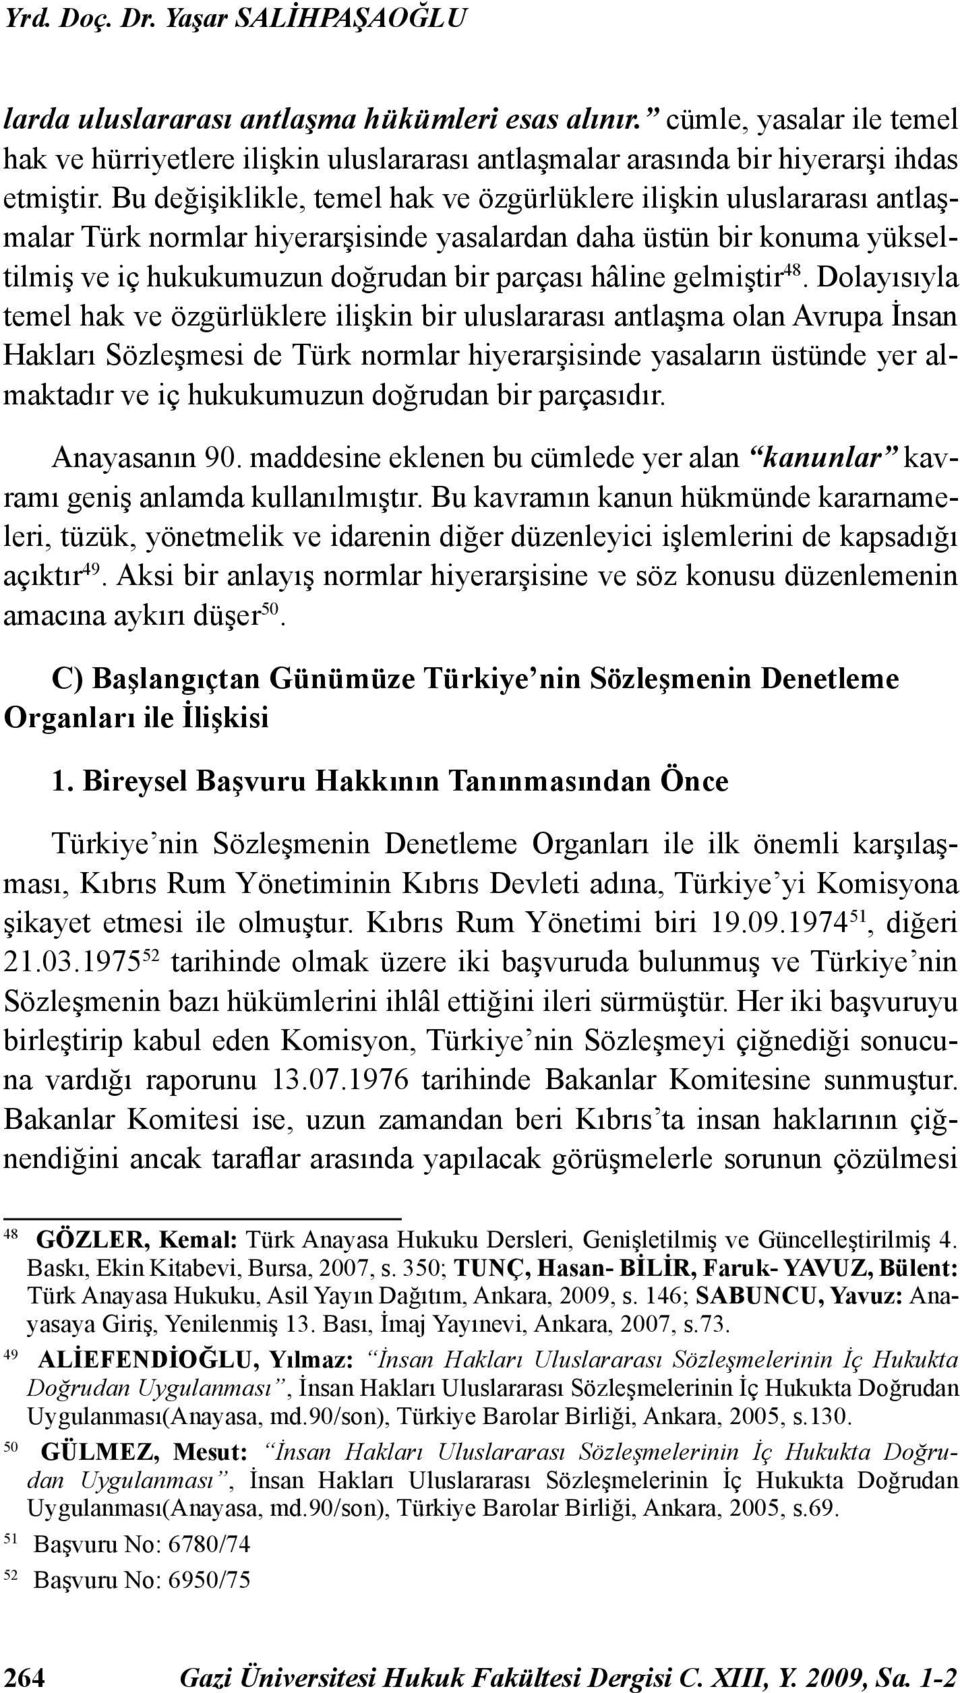 Bu değişiklikle, temel hak ve özgürlüklere ilişkin uluslararası antlaşmalar Türk normlar hiyerarşisinde yasalardan daha üstün bir konuma yükseltilmiş ve iç hukukumuzun doğrudan bir parçası hâline